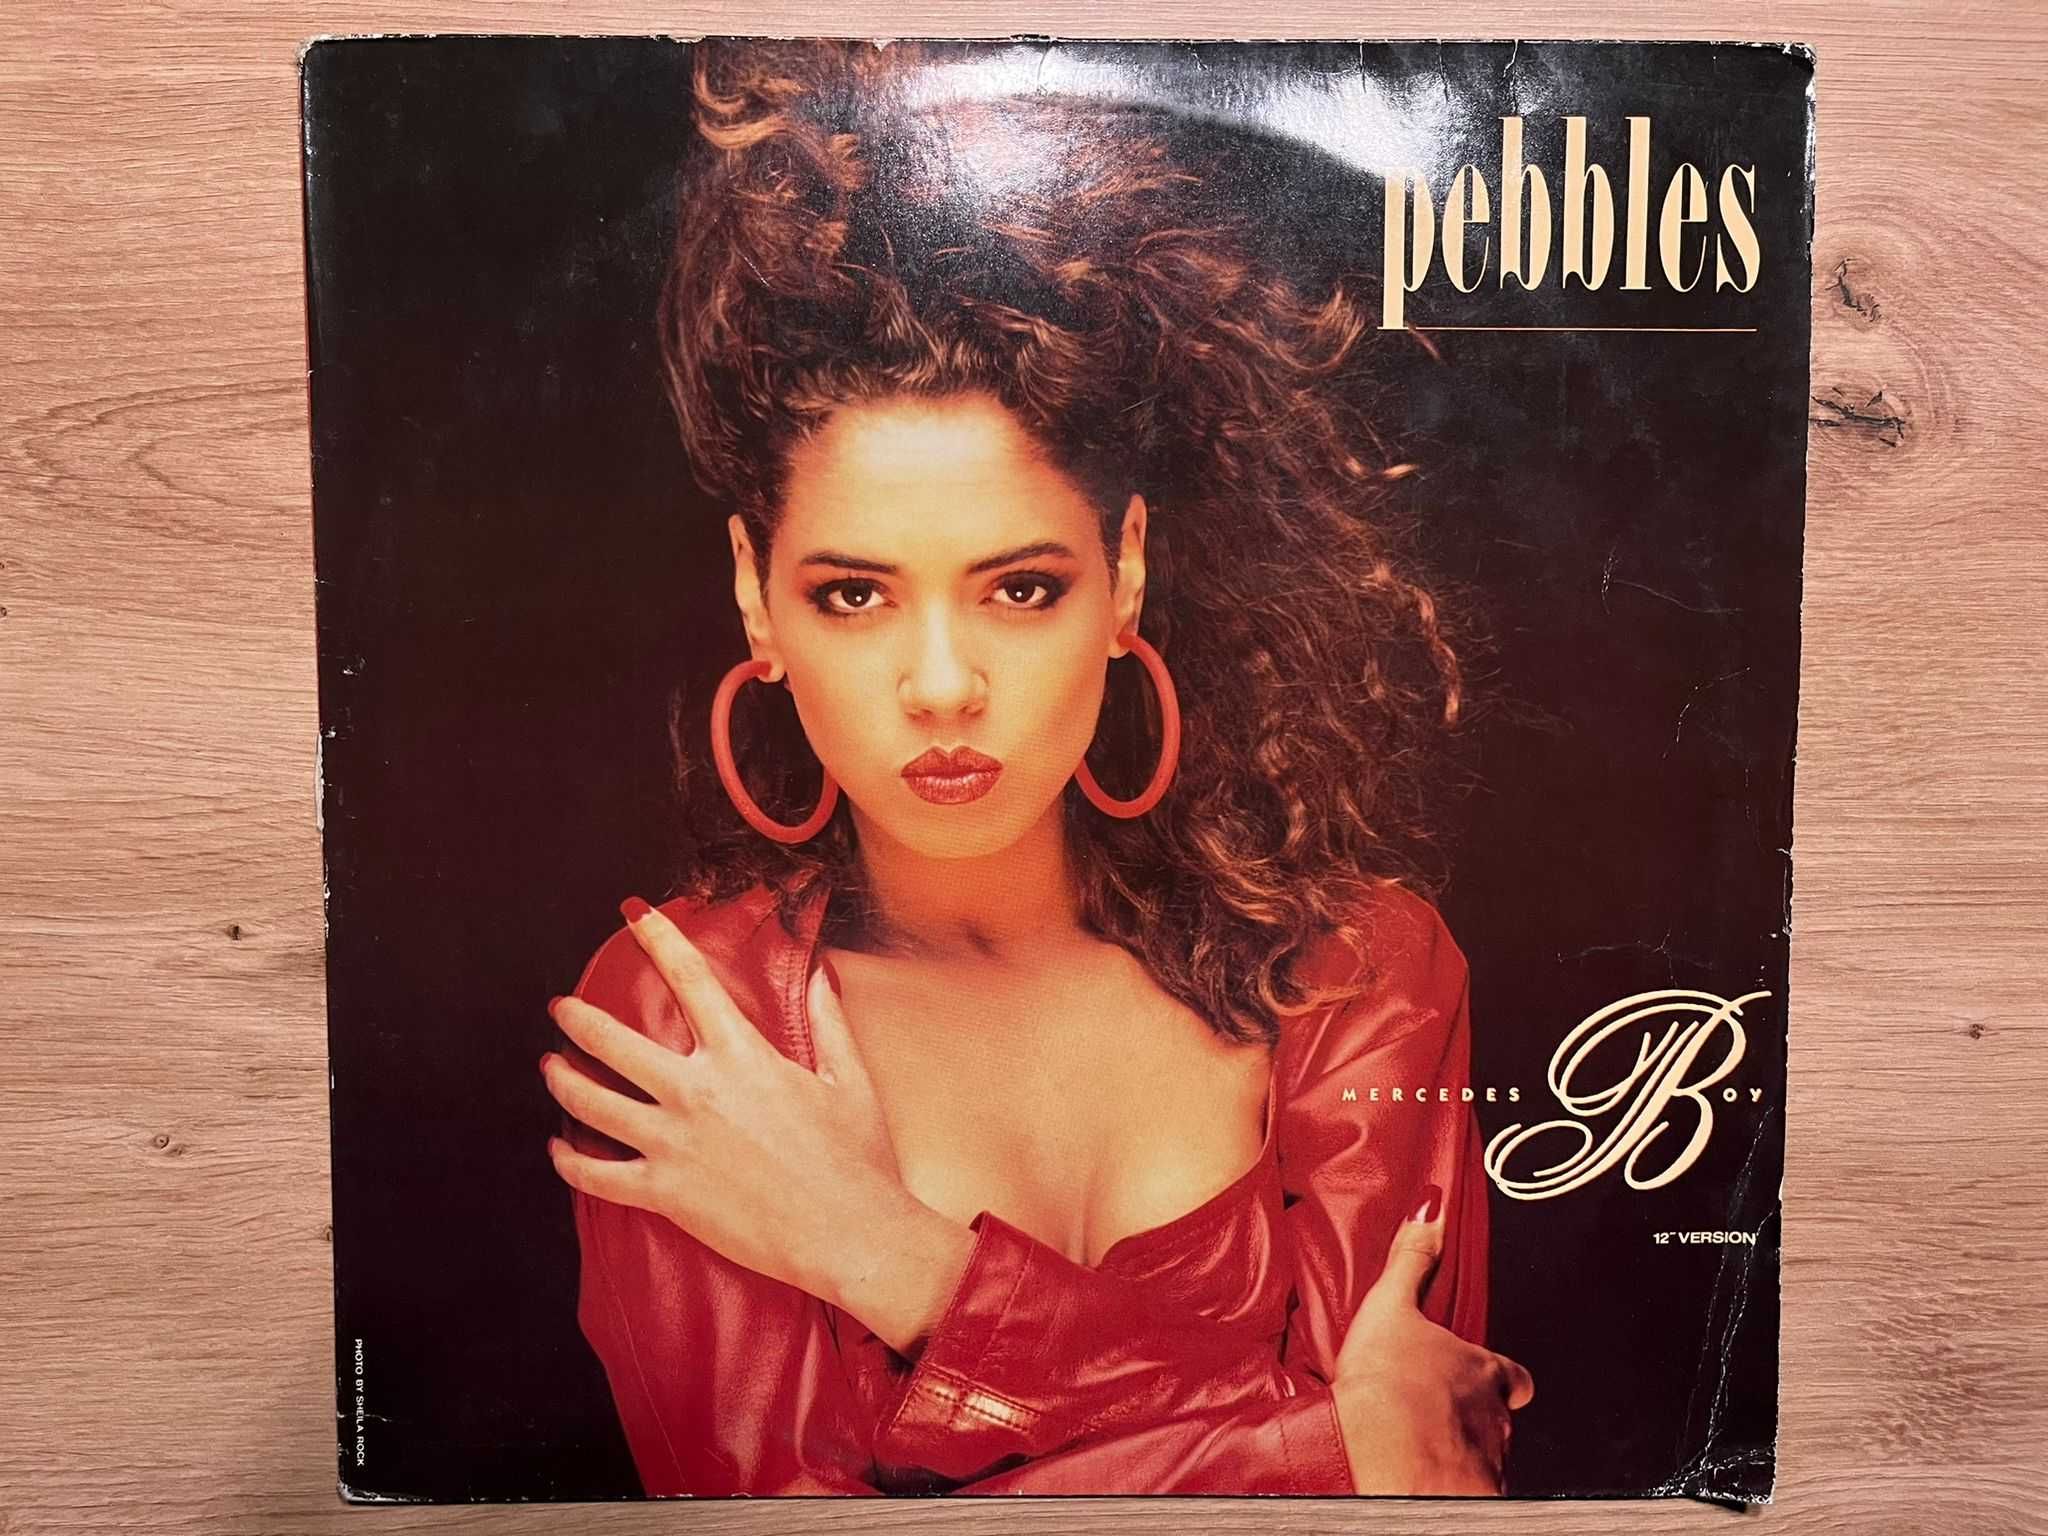 Pebbles - Mercedes Boy - winyl